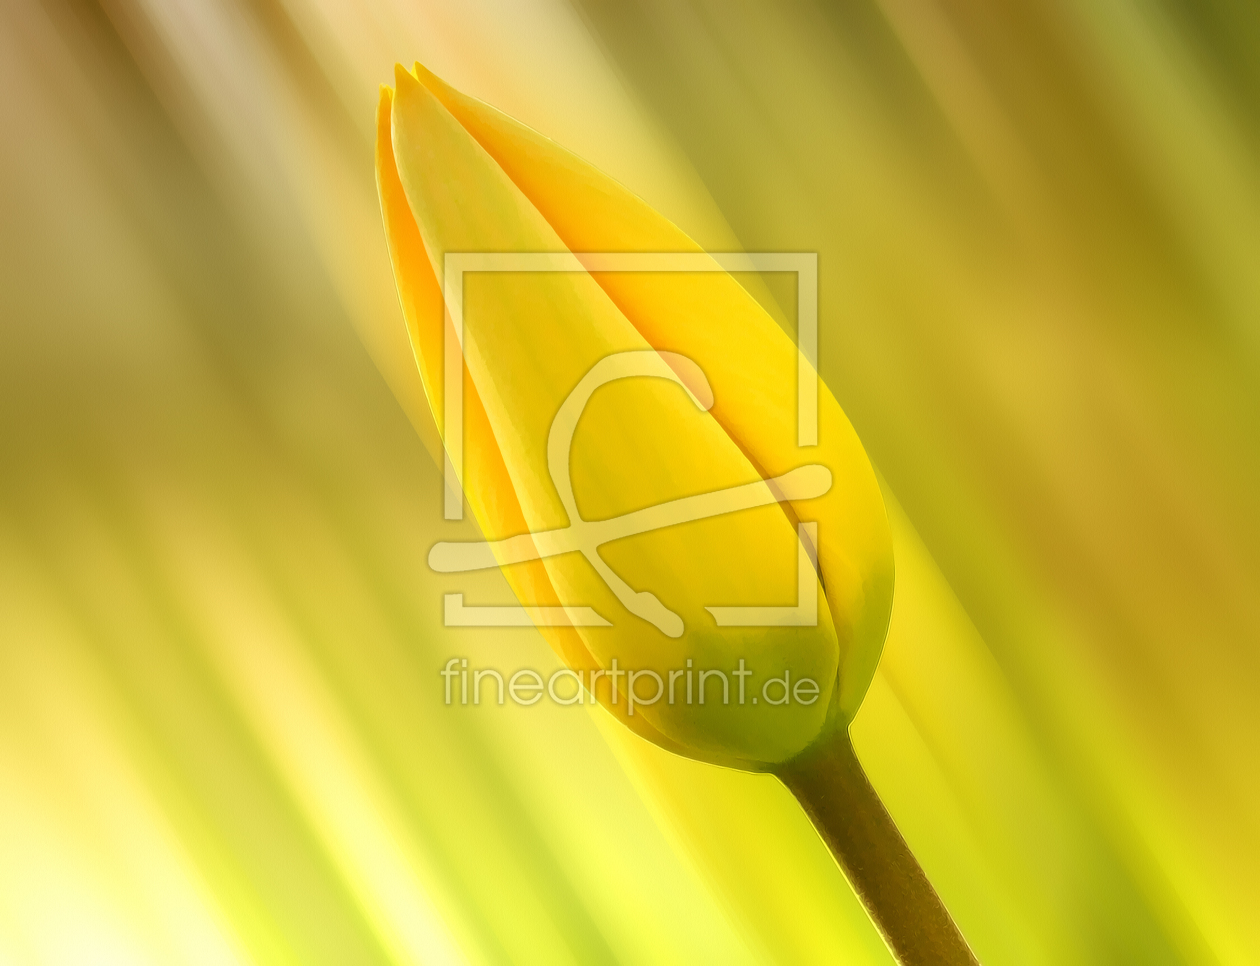 Bild-Nr.: 10426641 gelbe Tulpe erstellt von DagmarMarina